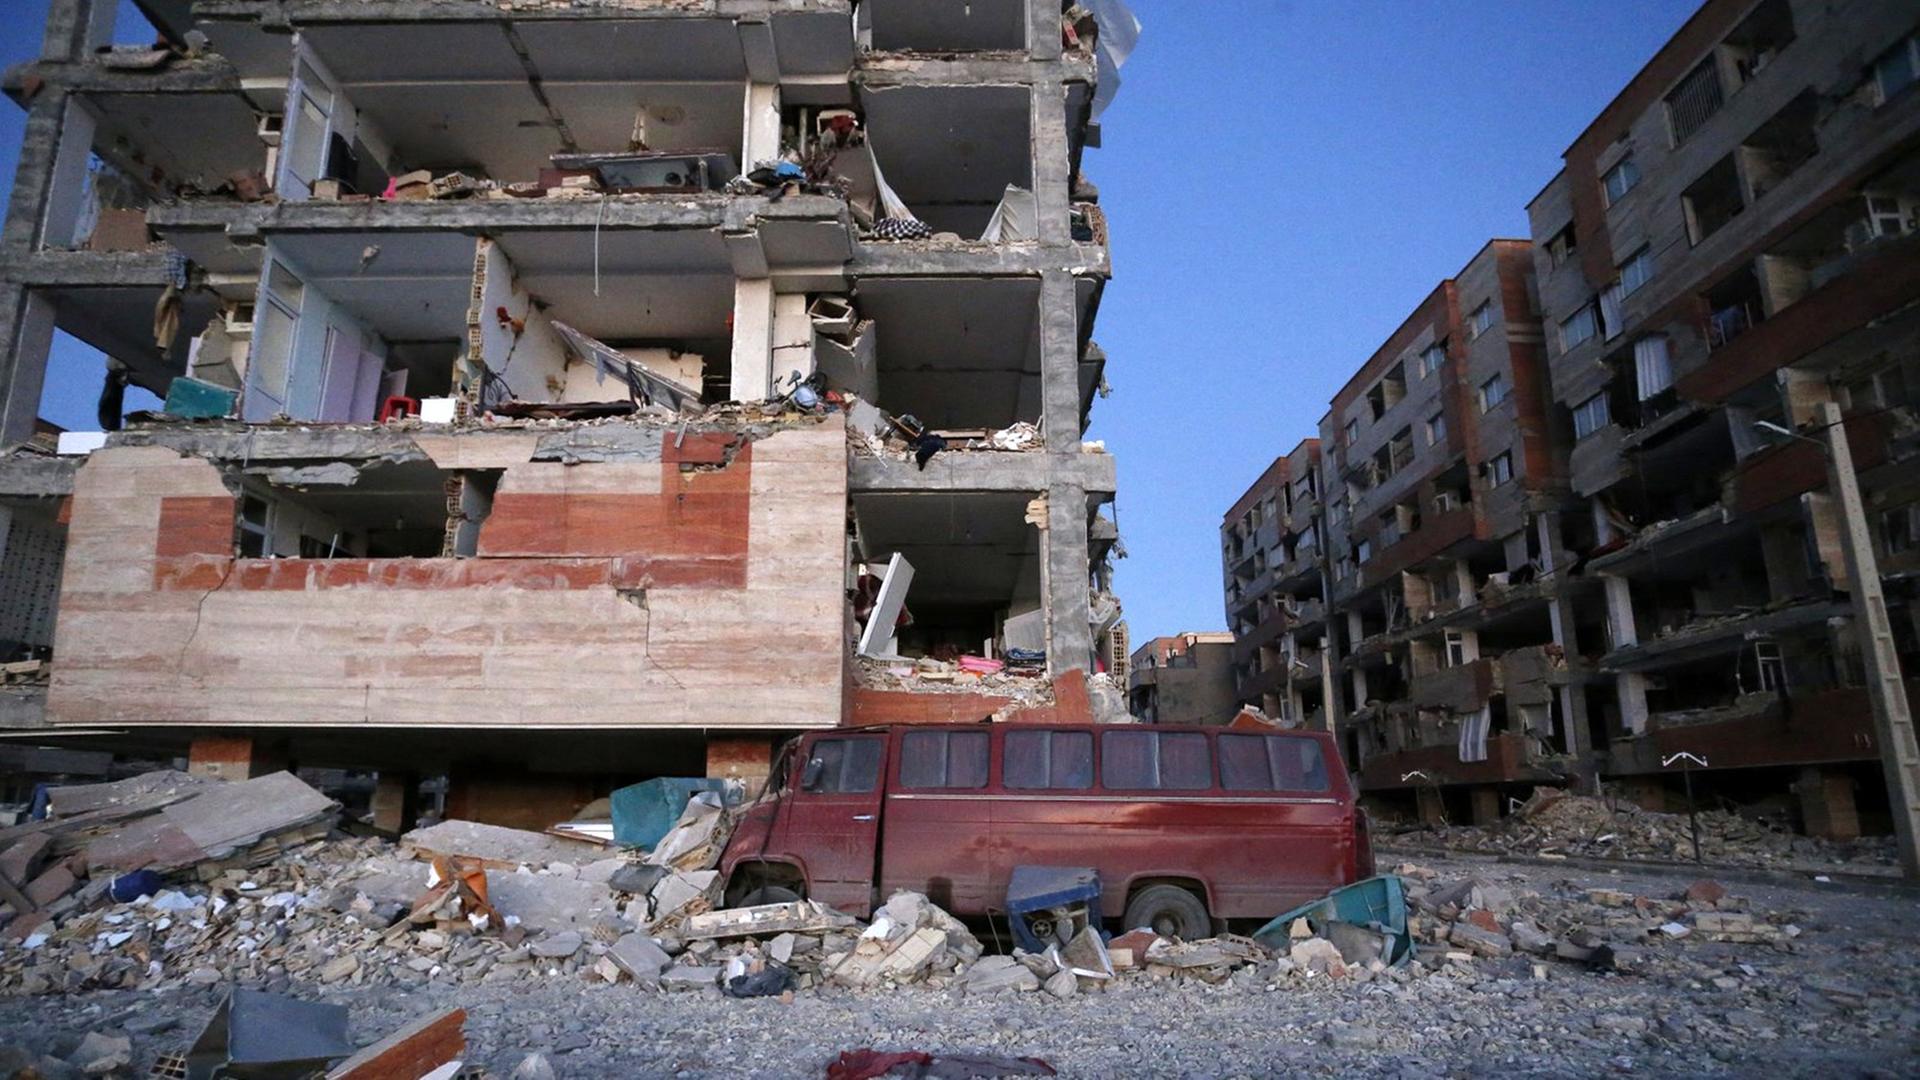 dpatopbilder - HANDOUT - Ein Foto der Iranischen Studenten Nachrichtenagentur (ISNA) zeigt zerstörte Gebäude am 13.11.2017 nach dem Erdbeben in Sarpol-e-Zahab (Iran). Nach dem schweren Erdbeben in den südlichen Kurdengebieten in der Grenzregion zwischen dem Iran und dem Nordirak ist die Zahl der Toten auf über 160 gestiegen. Dem iranischen Innenministerium zufolge gab es am Montag 164 Tote und 1686 Verletzte. Weitere Opfer werden befürchtet. Das Erdbeben der Stärke 7,3 hatte die Region am Sonntagabend erschüttert.